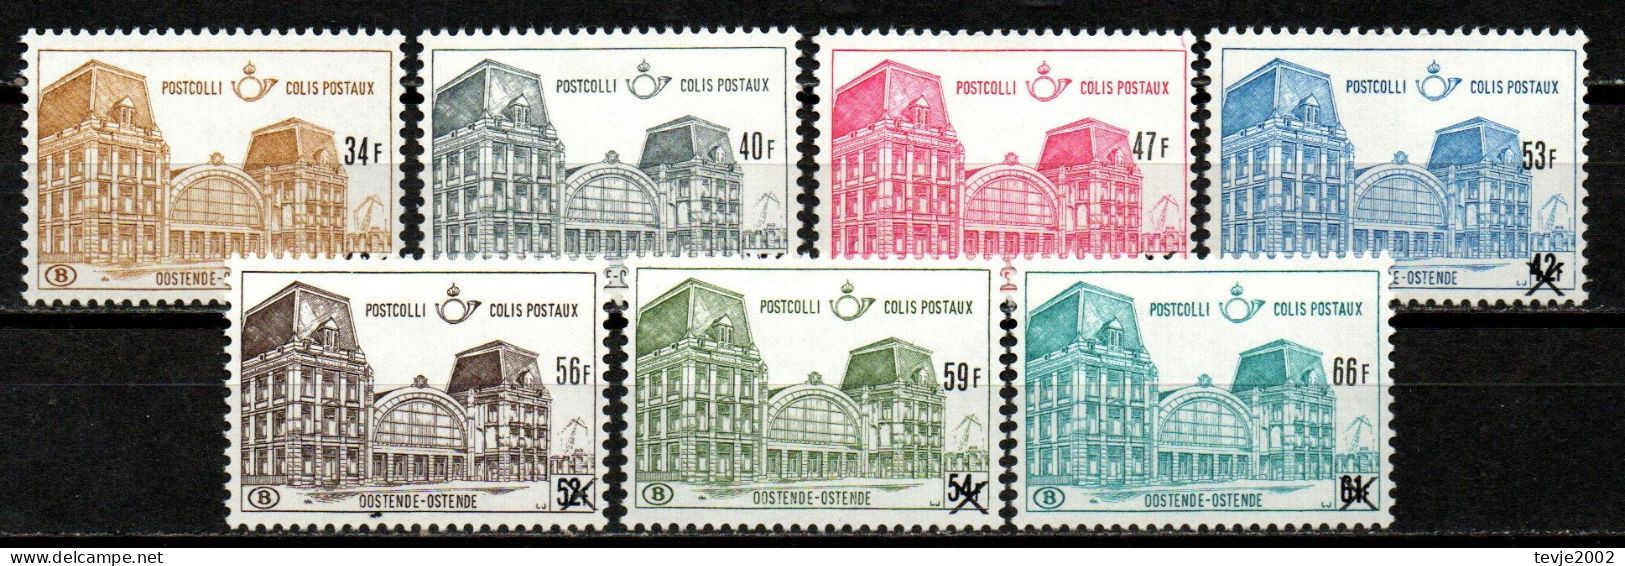 Belgien 1971 - Postpaketmarken Mi.Nr. 76 - 82 - Postfrisch MNH - Ungebraucht